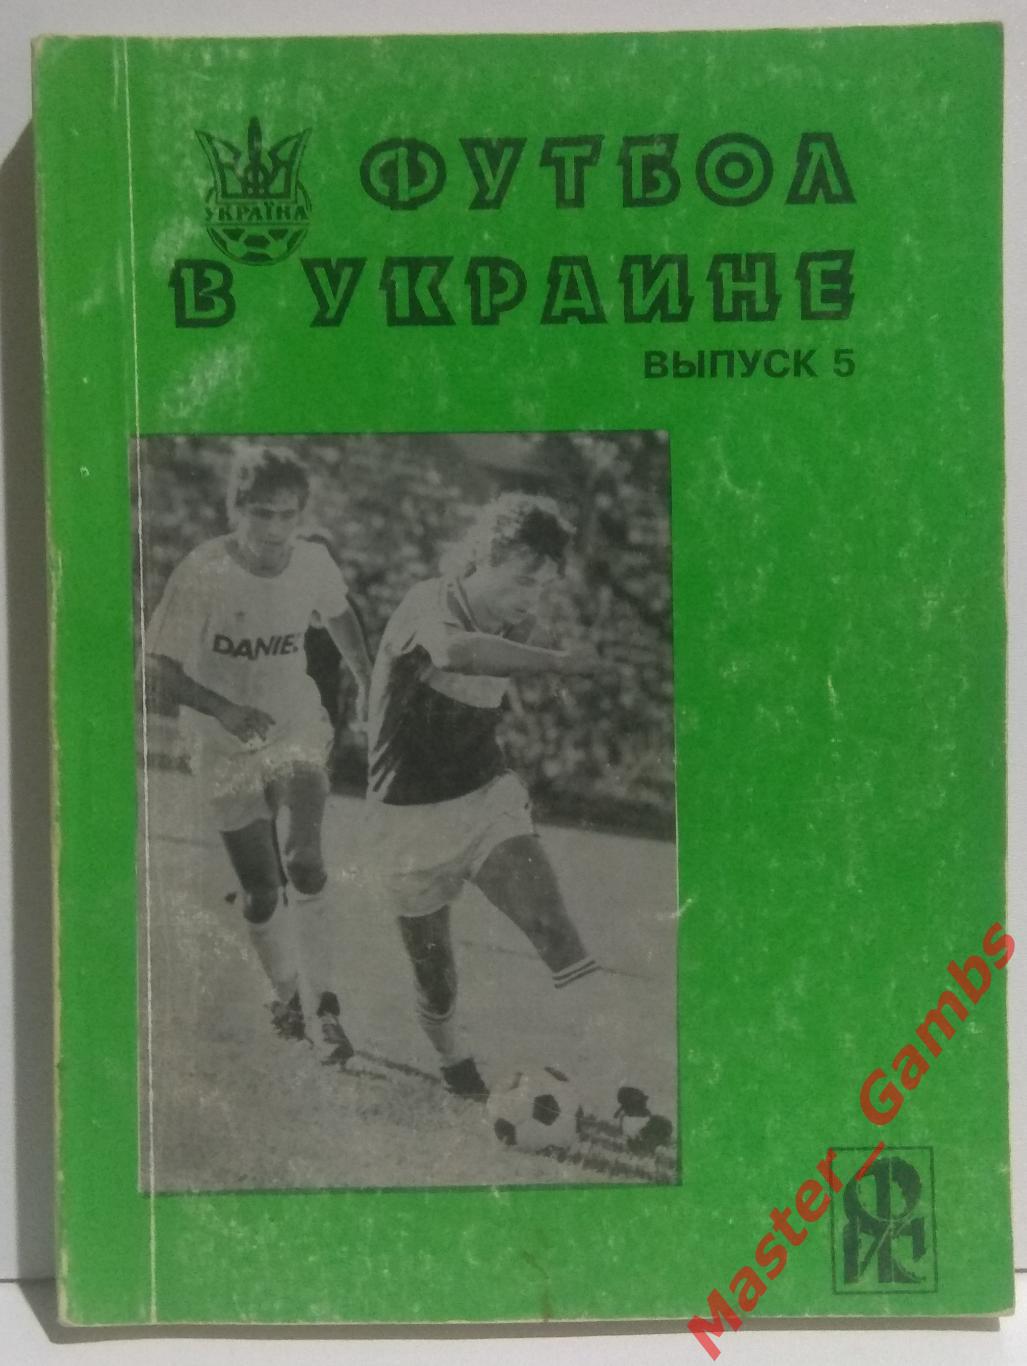 Ландер - Футбол в Украине #5 1995/1996*